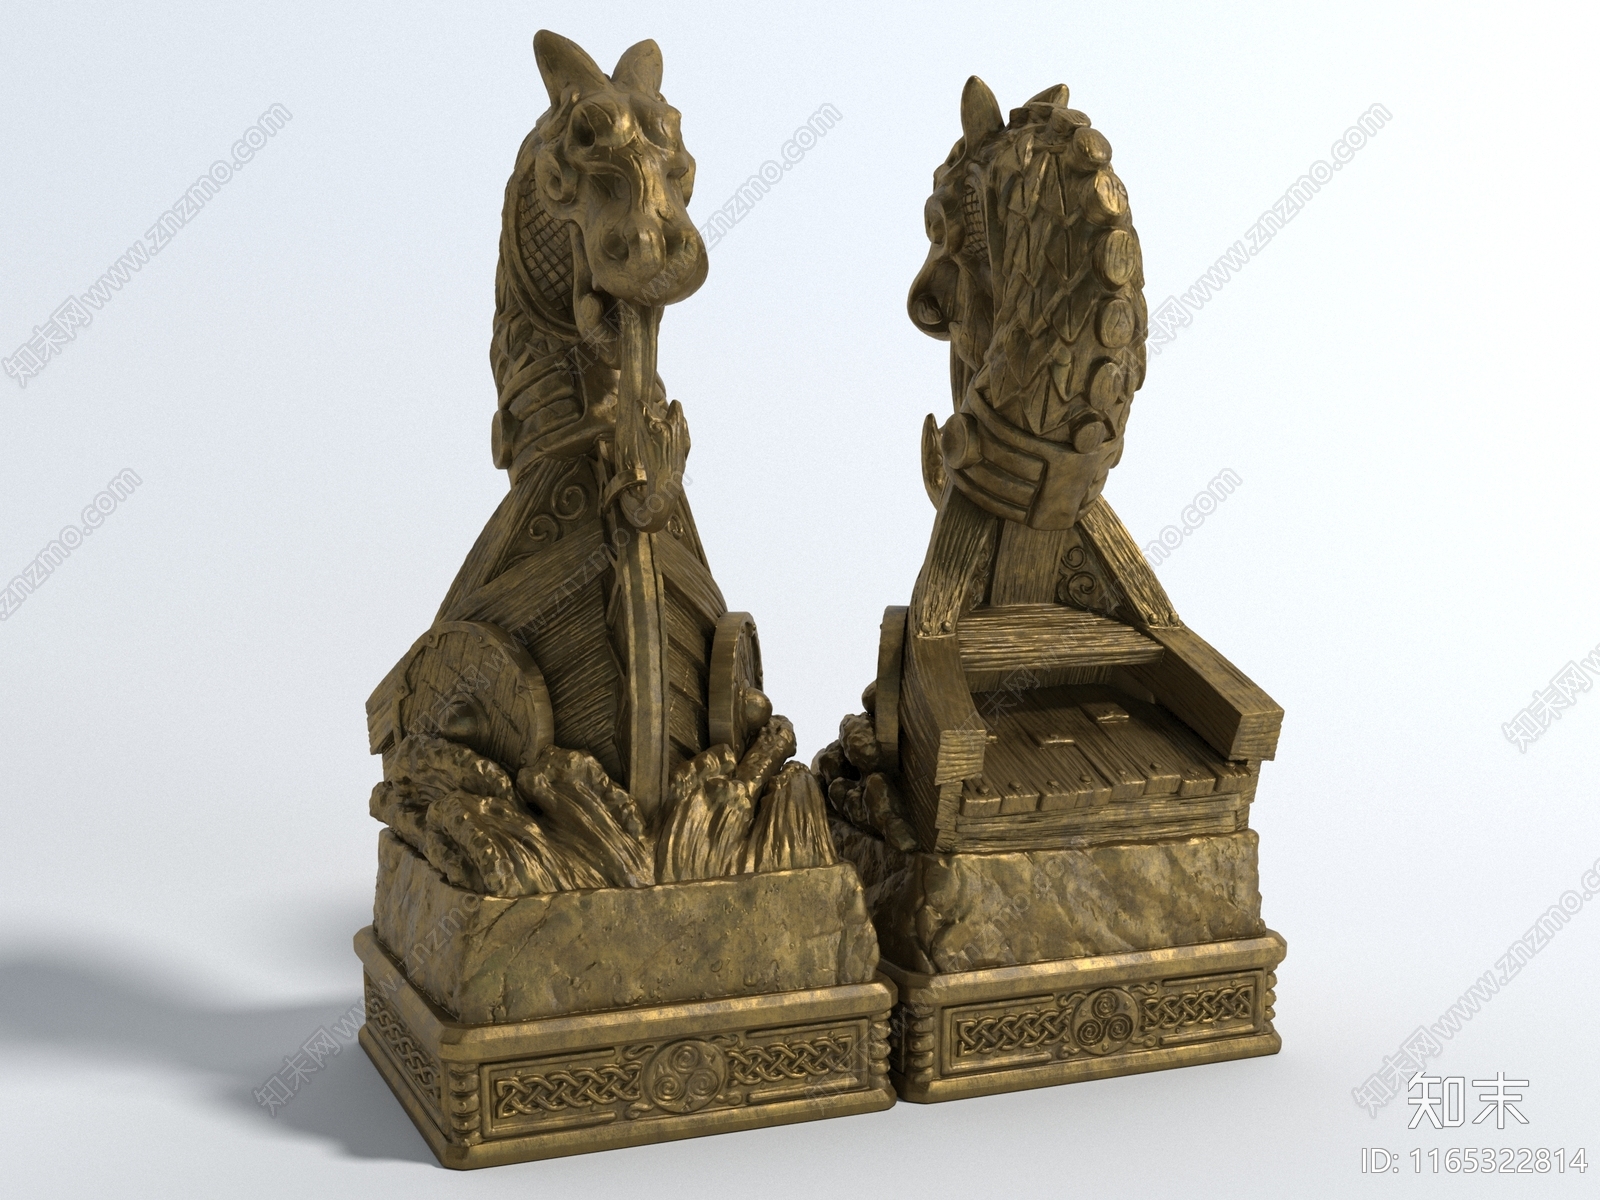 现代美式雕塑摆件3D模型下载【ID:1165322814】